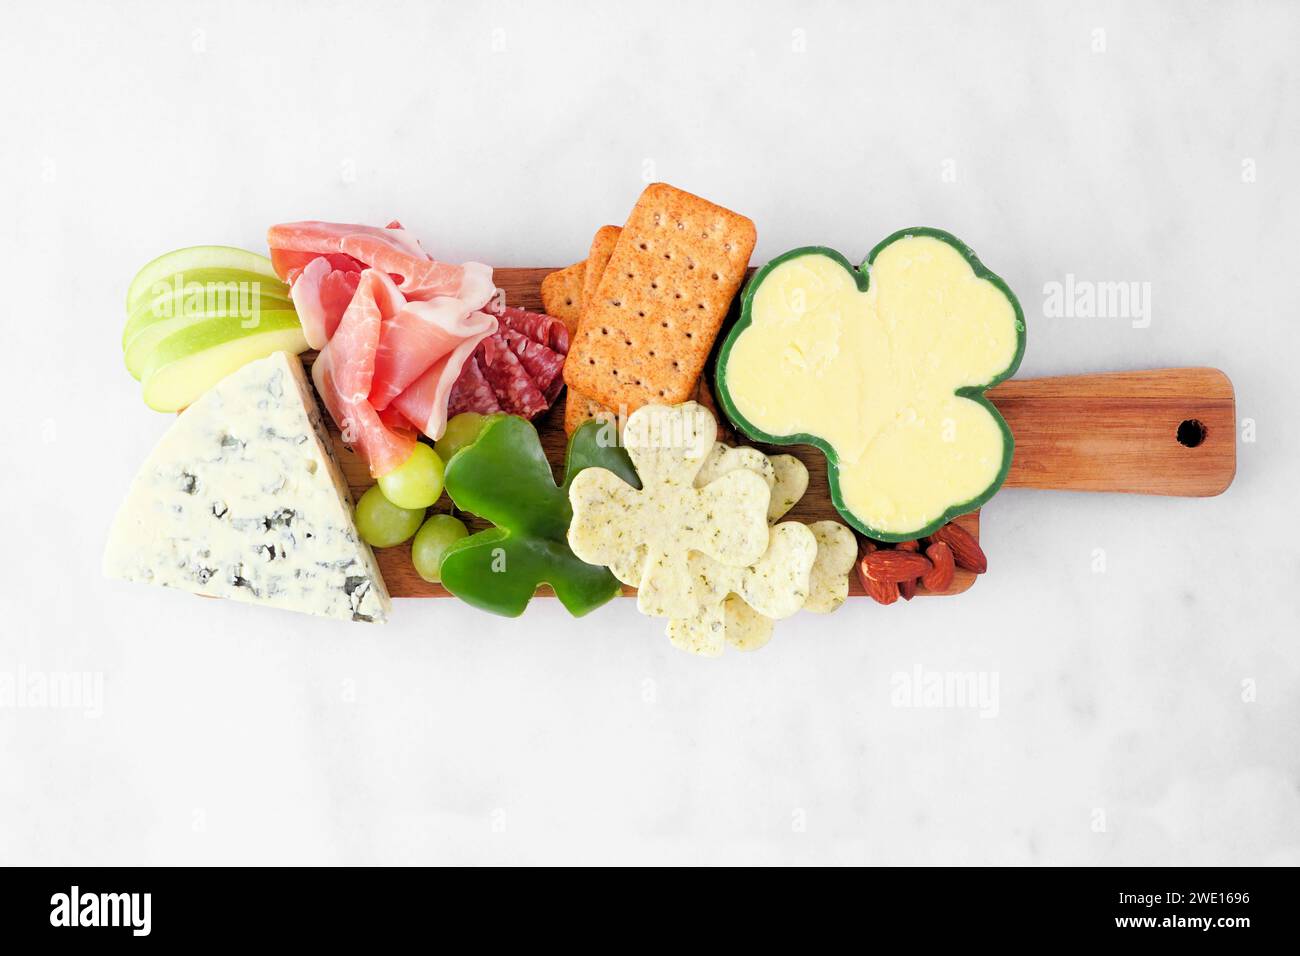 Tableau de charcuterie à thème de la Saint-Patrick sur fond de marbre blanc. Assortiment de fromages, viandes, fruits et légumes hors-d'œuvre. Vue de dessus. Banque D'Images